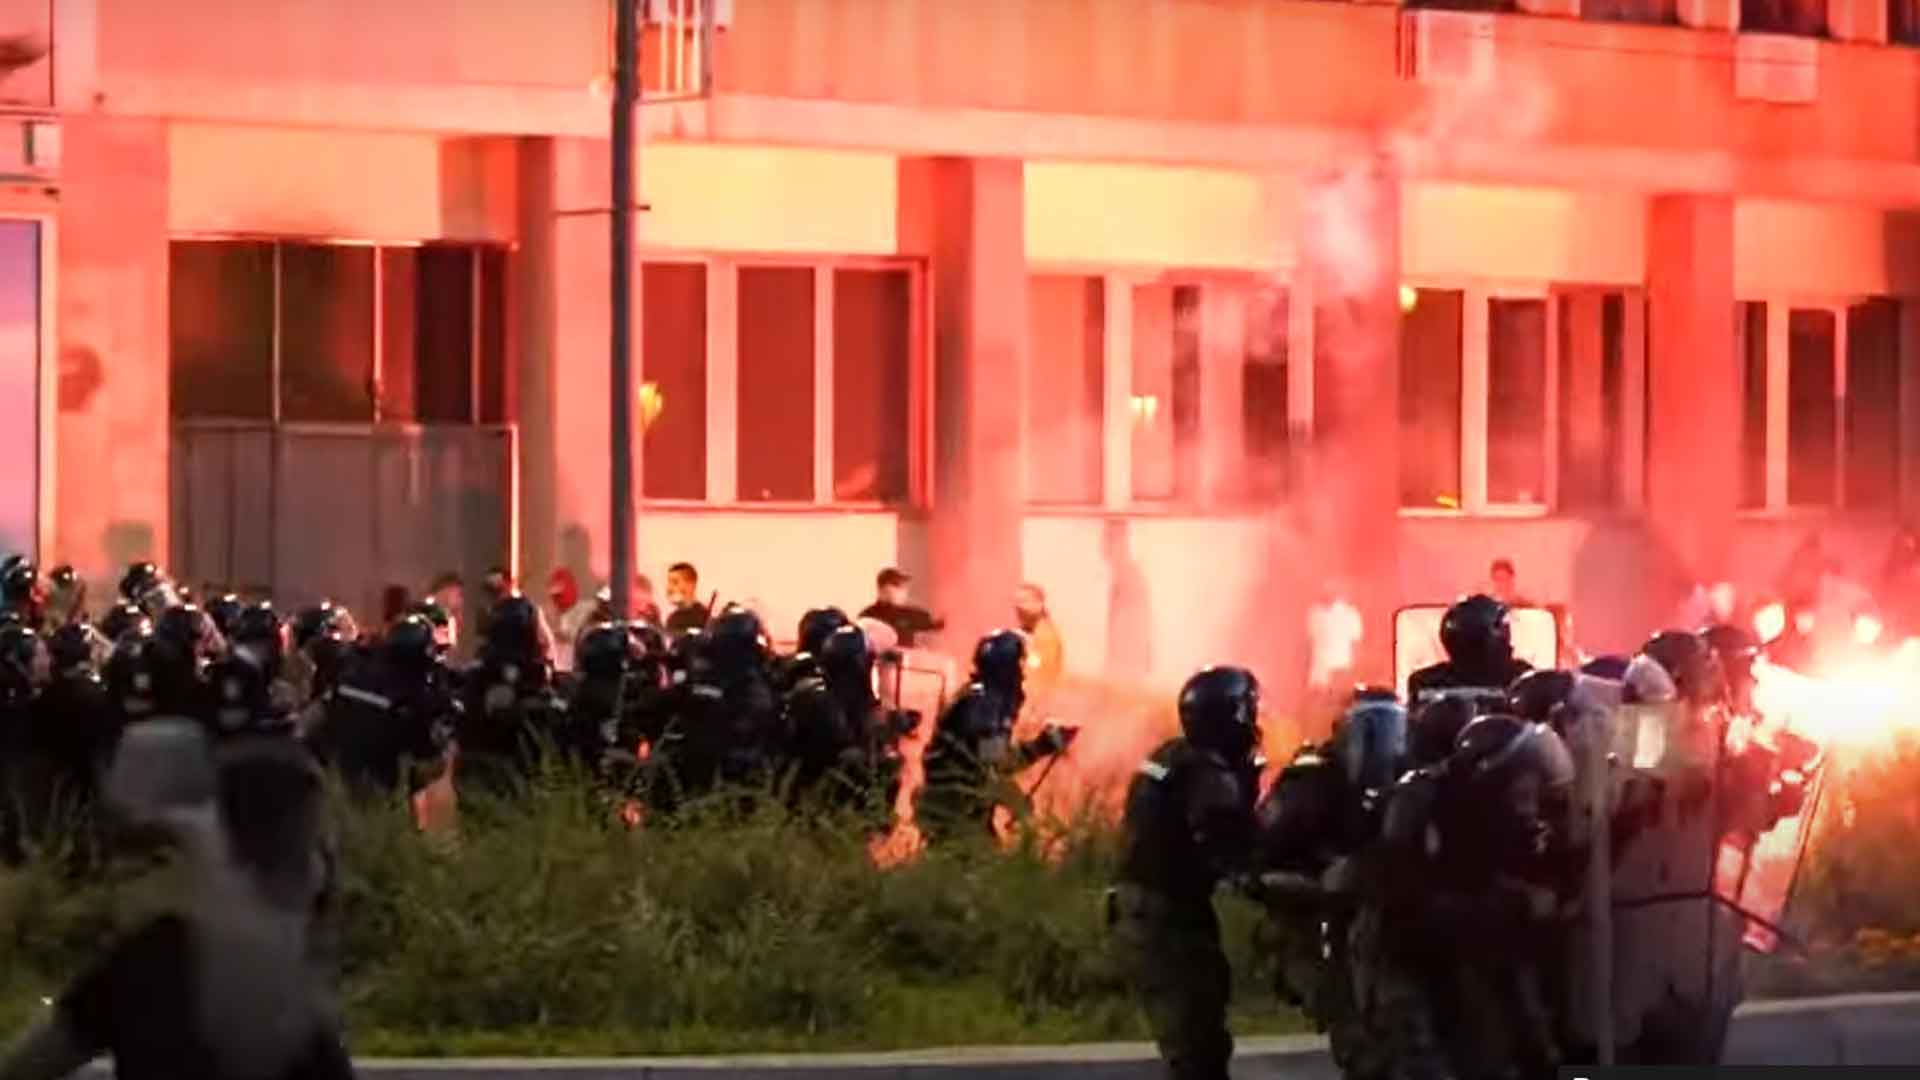 Митингующие жгли здания, нападали на правоохранителей и избивали прохожих на улицах, заявили в МВД Кадр: © youtube.com / euronews